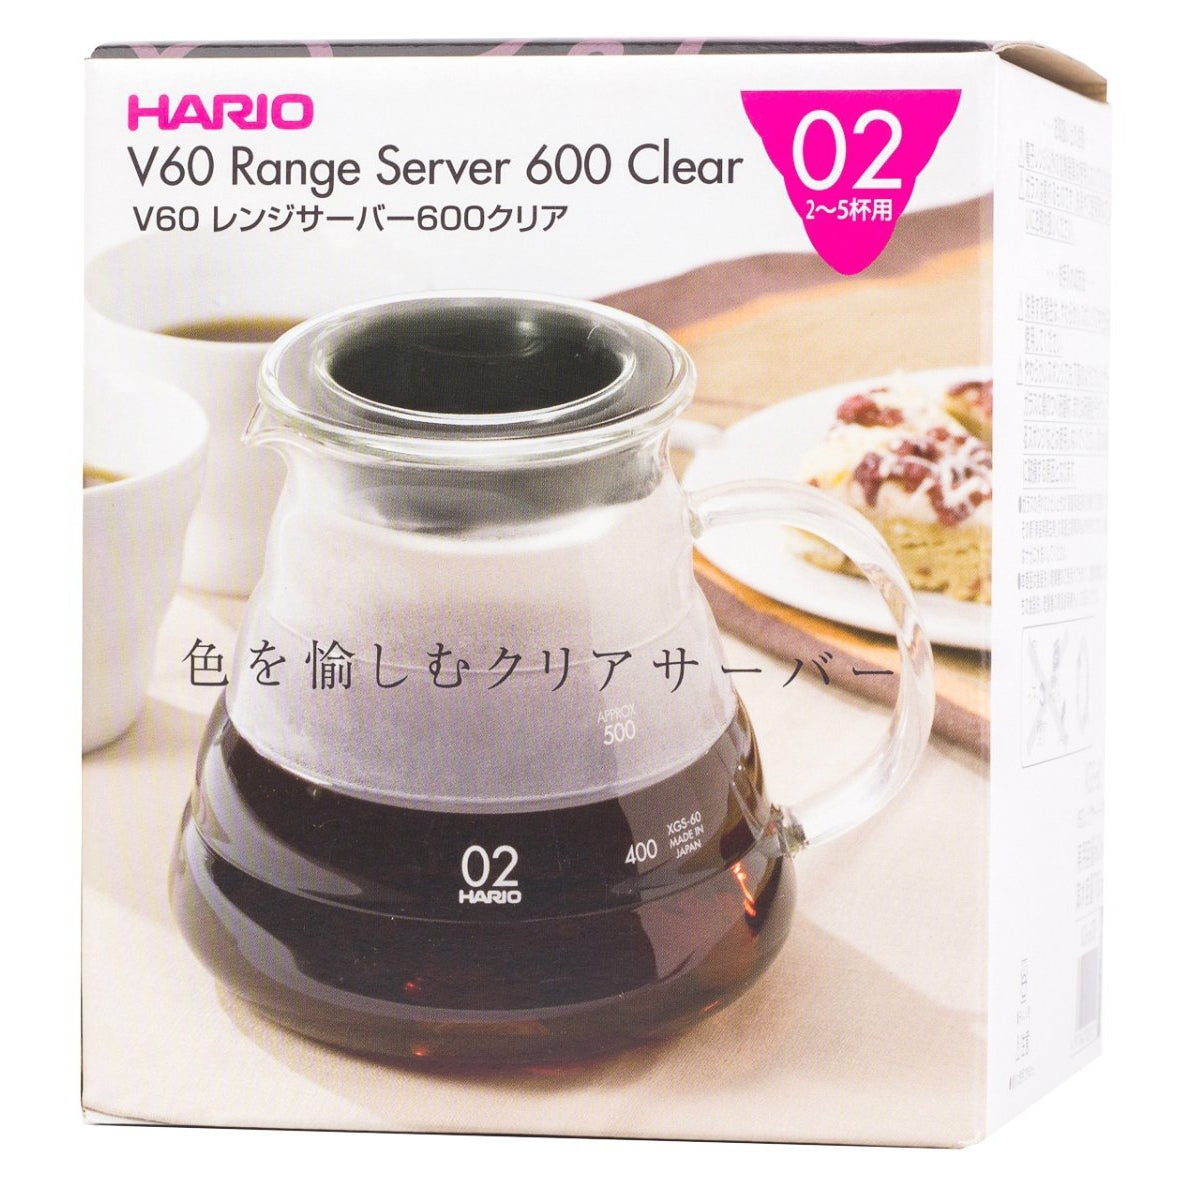 Чайник Hario V60 Range